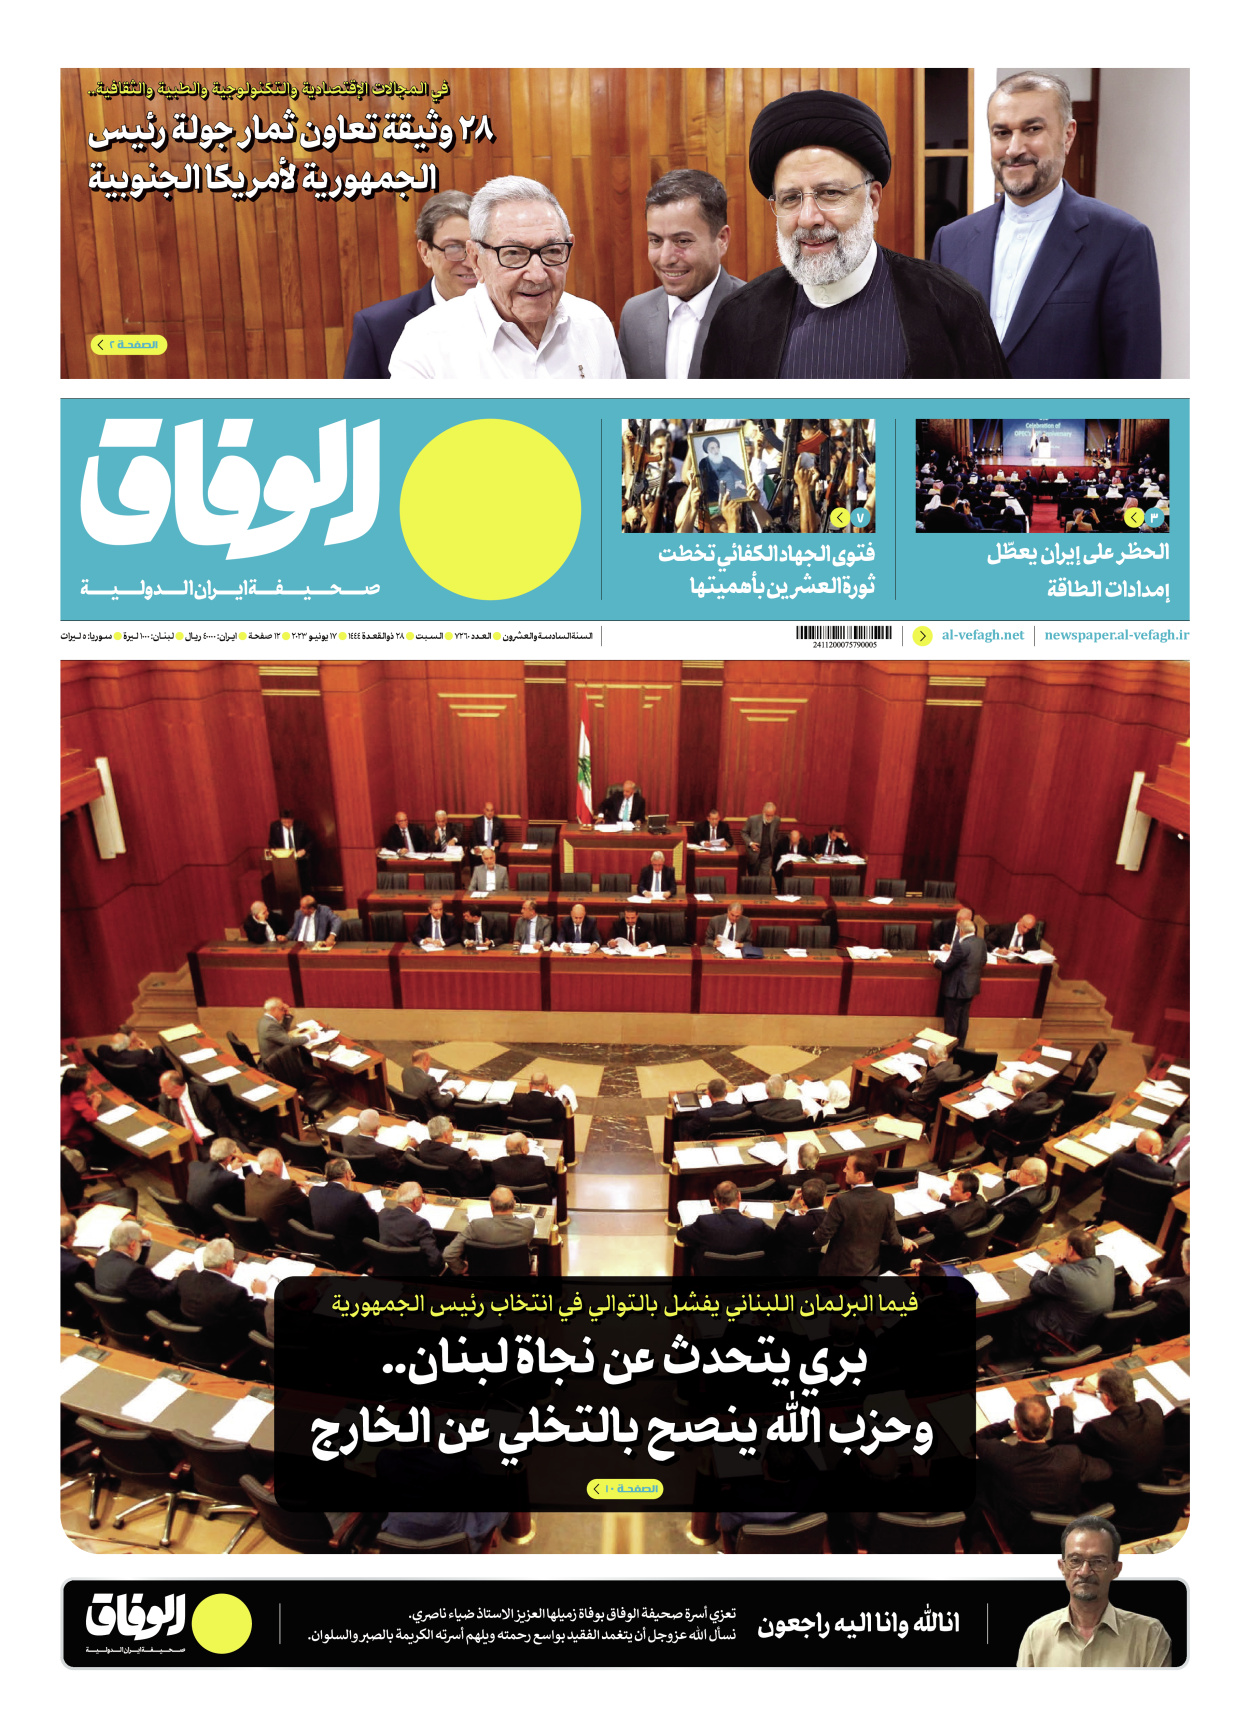 صحیفة ایران الدولیة الوفاق - العدد سبعة آلاف ومائتان وستون - ١٦ يونيو ٢٠٢٣ - الصفحة ۱